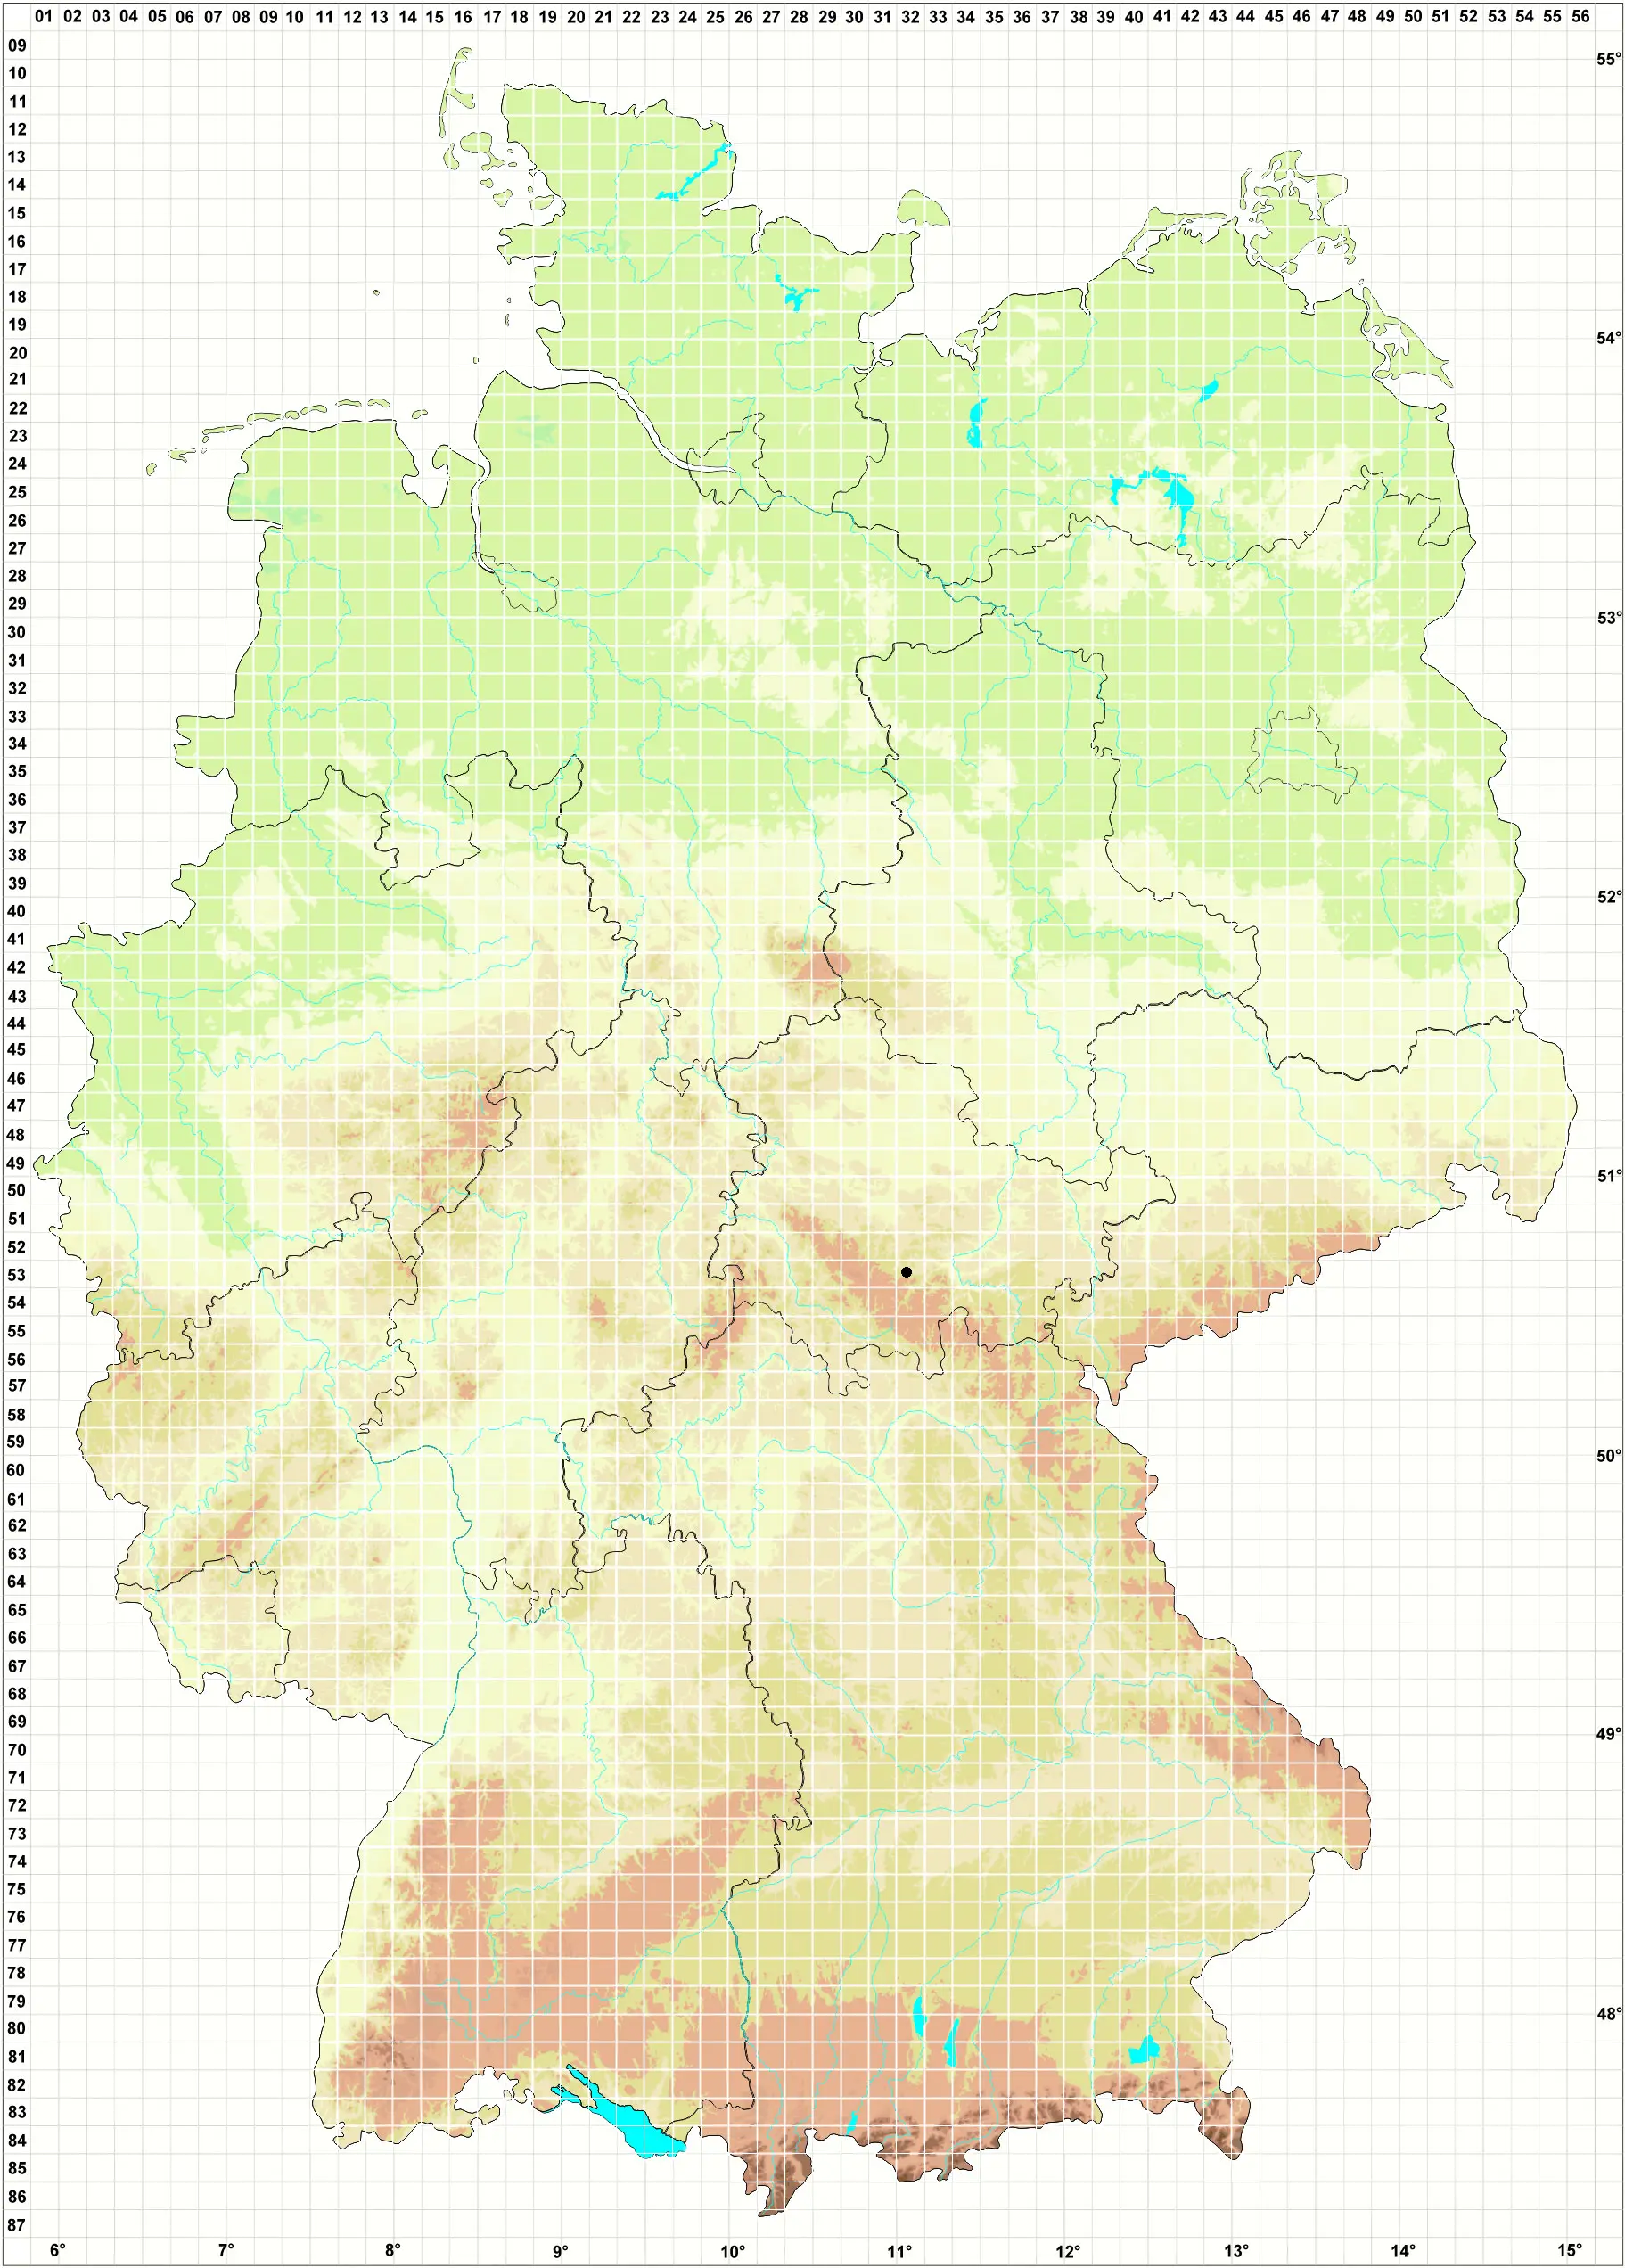 Karte H. Grünberg 28.08.2013